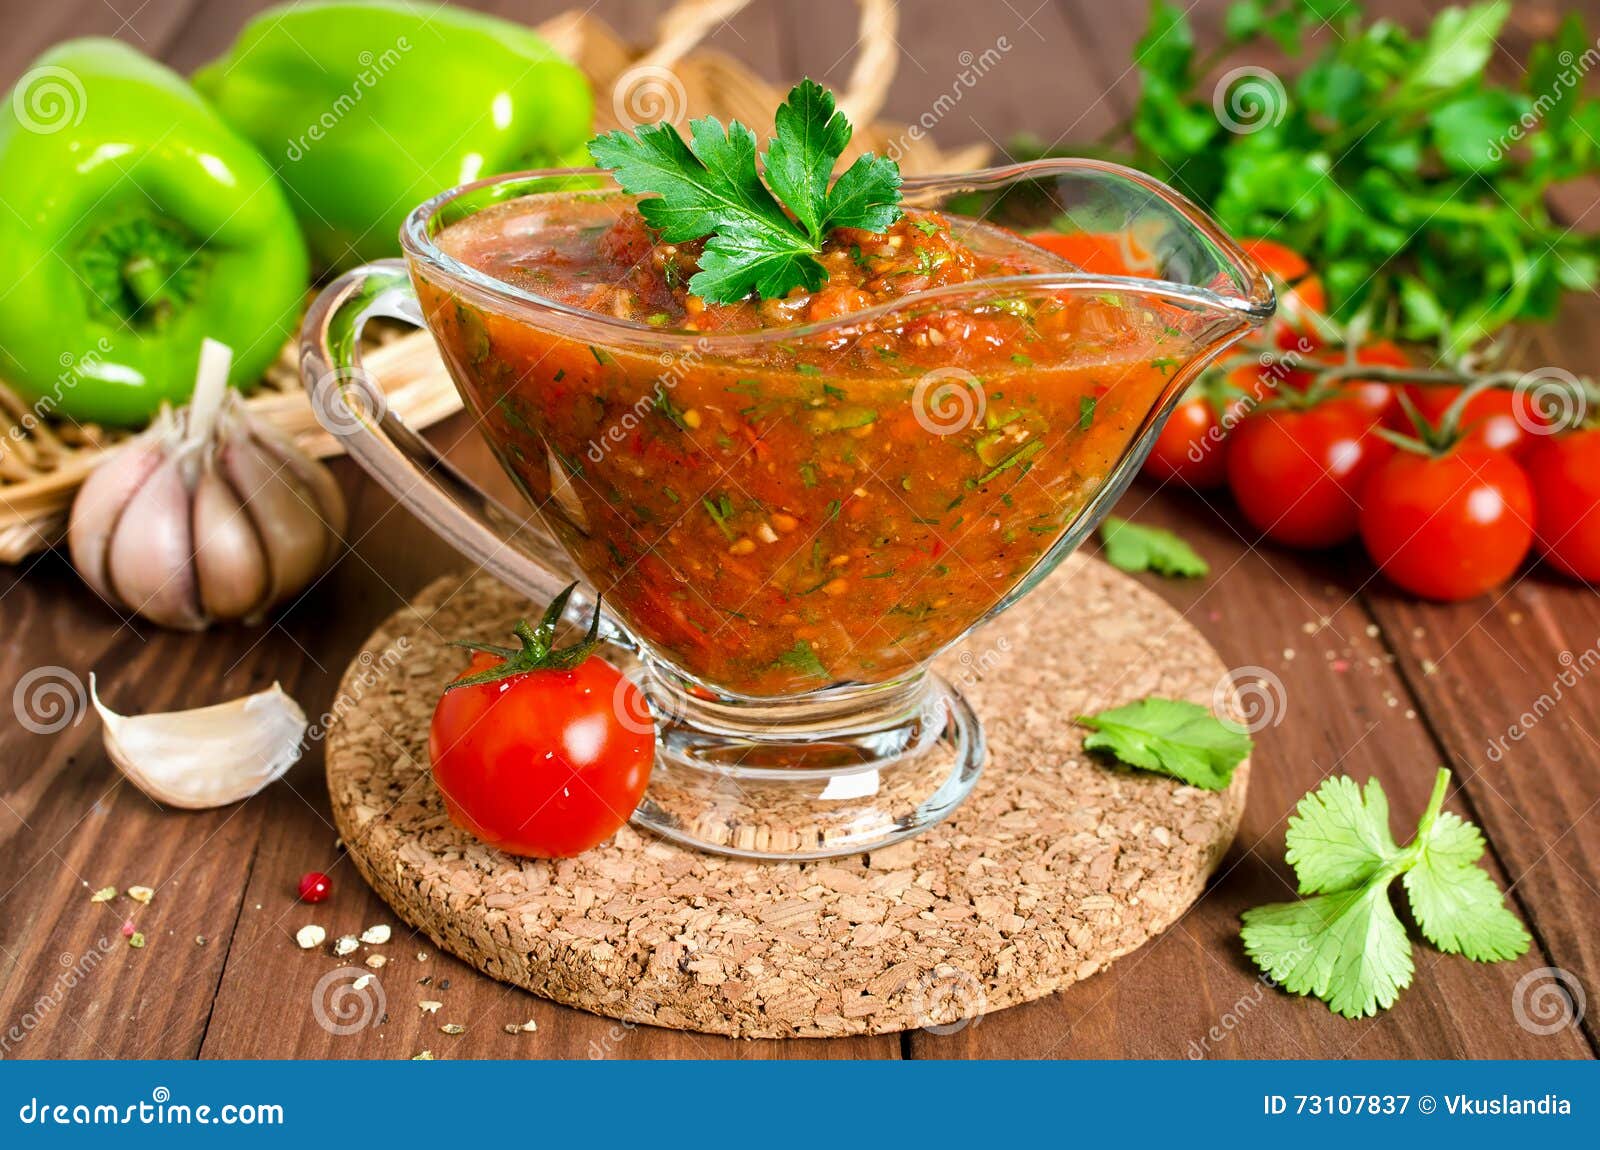 томатный соус с травами для пиццы фото 104